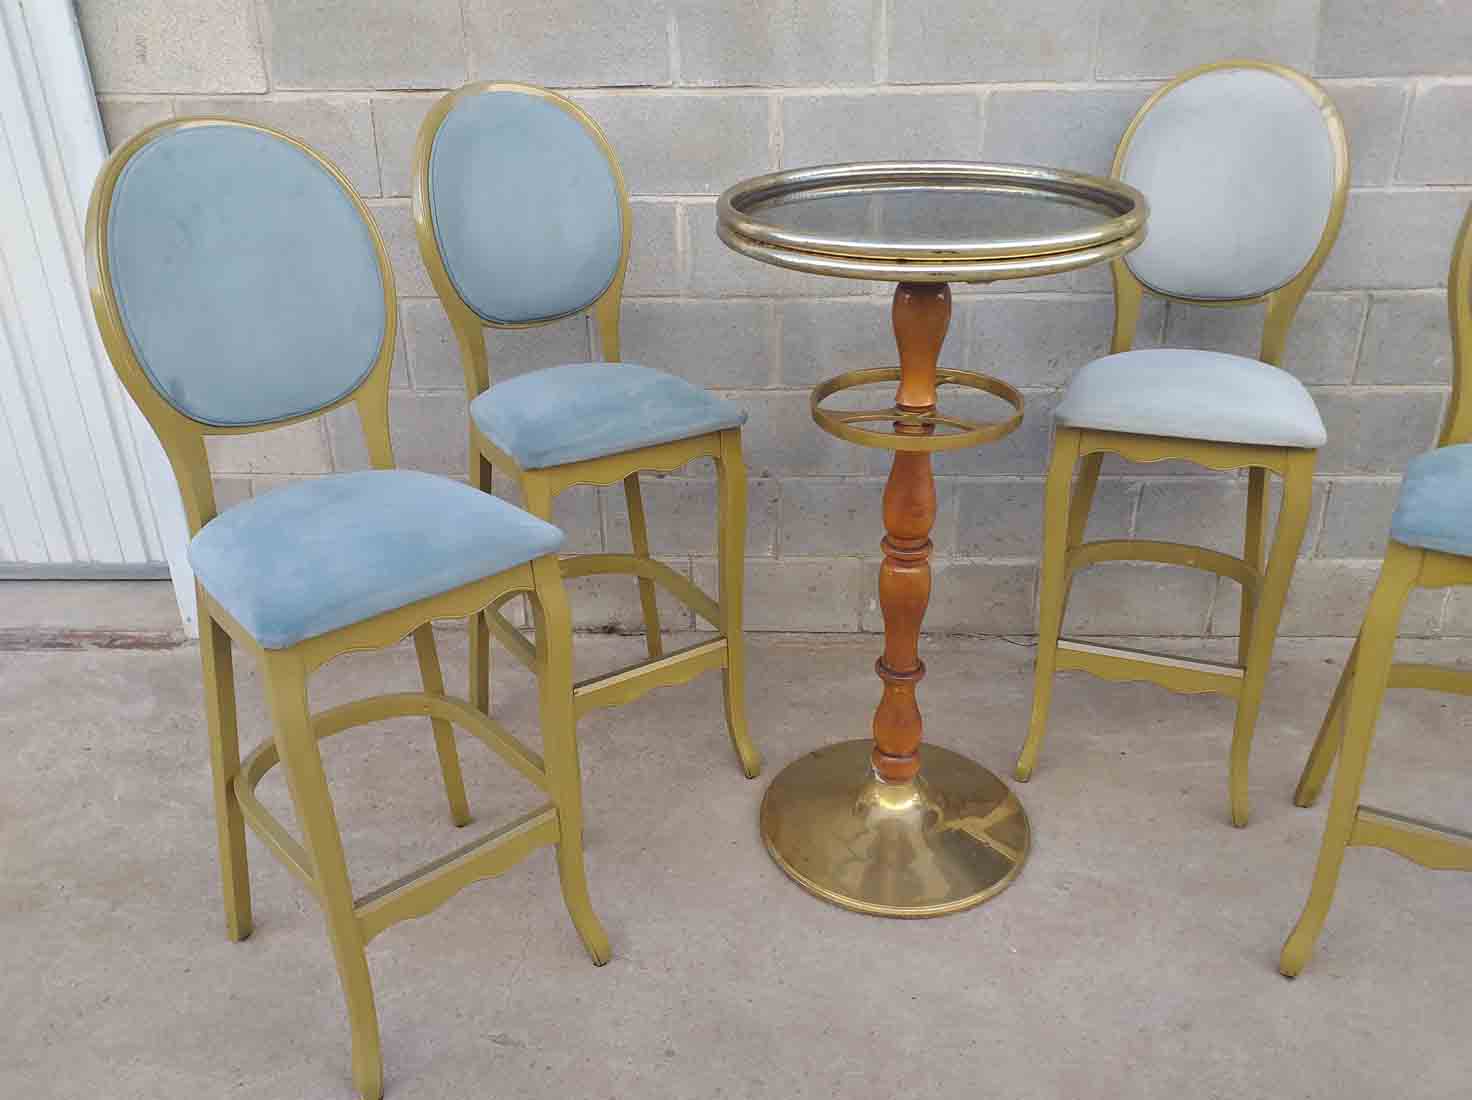 Taburete de bar estilo Luis XVI + mesa alta bar. 4 sillas altas